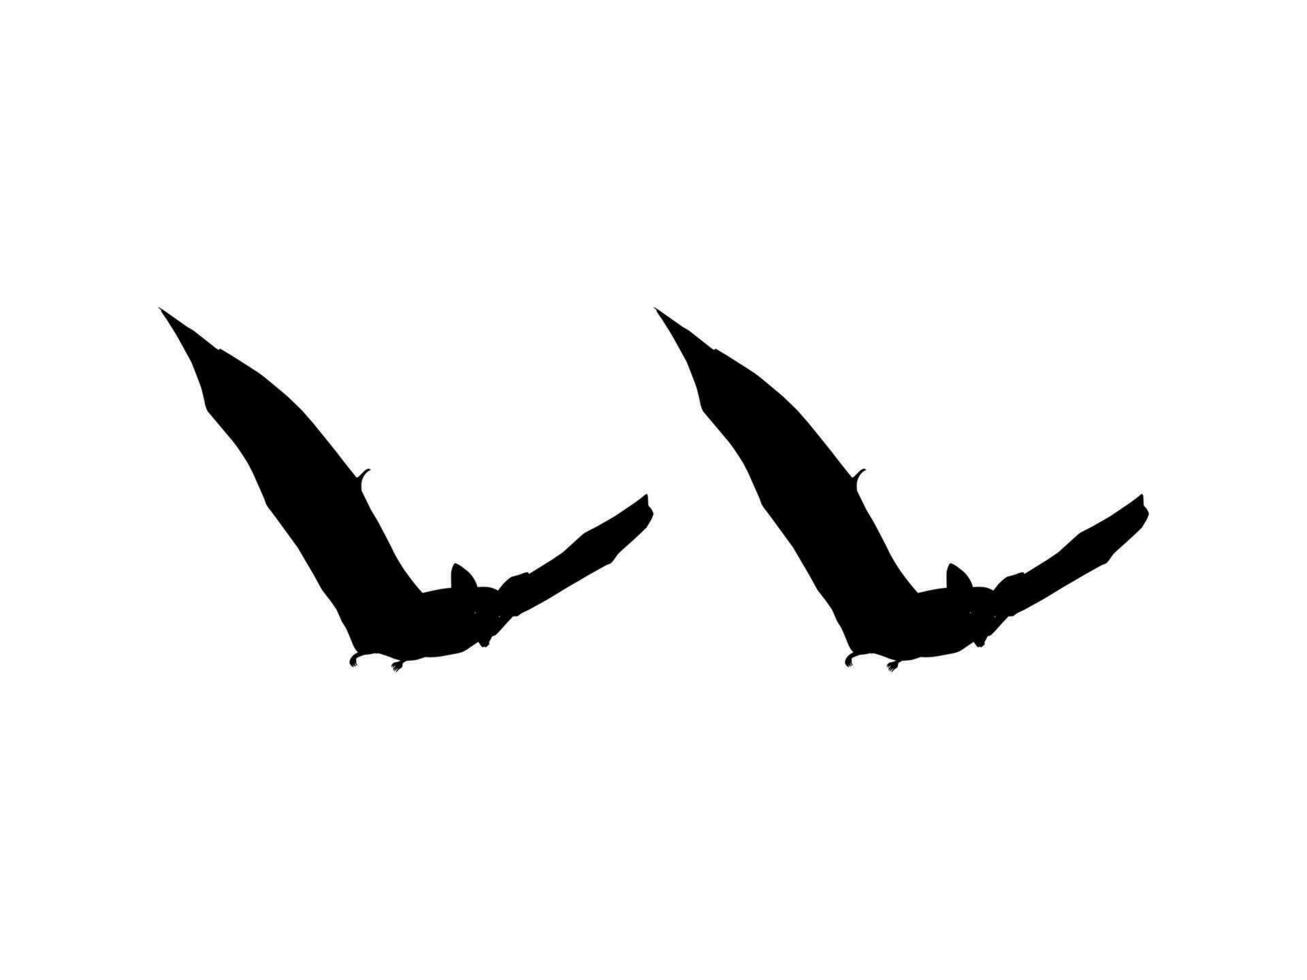 silueta del par de zorro volador o murciélago para ilustración de arte, icono, símbolo, pictograma, logotipo, sitio web o elemento de diseño gráfico. ilustración vectorial vector